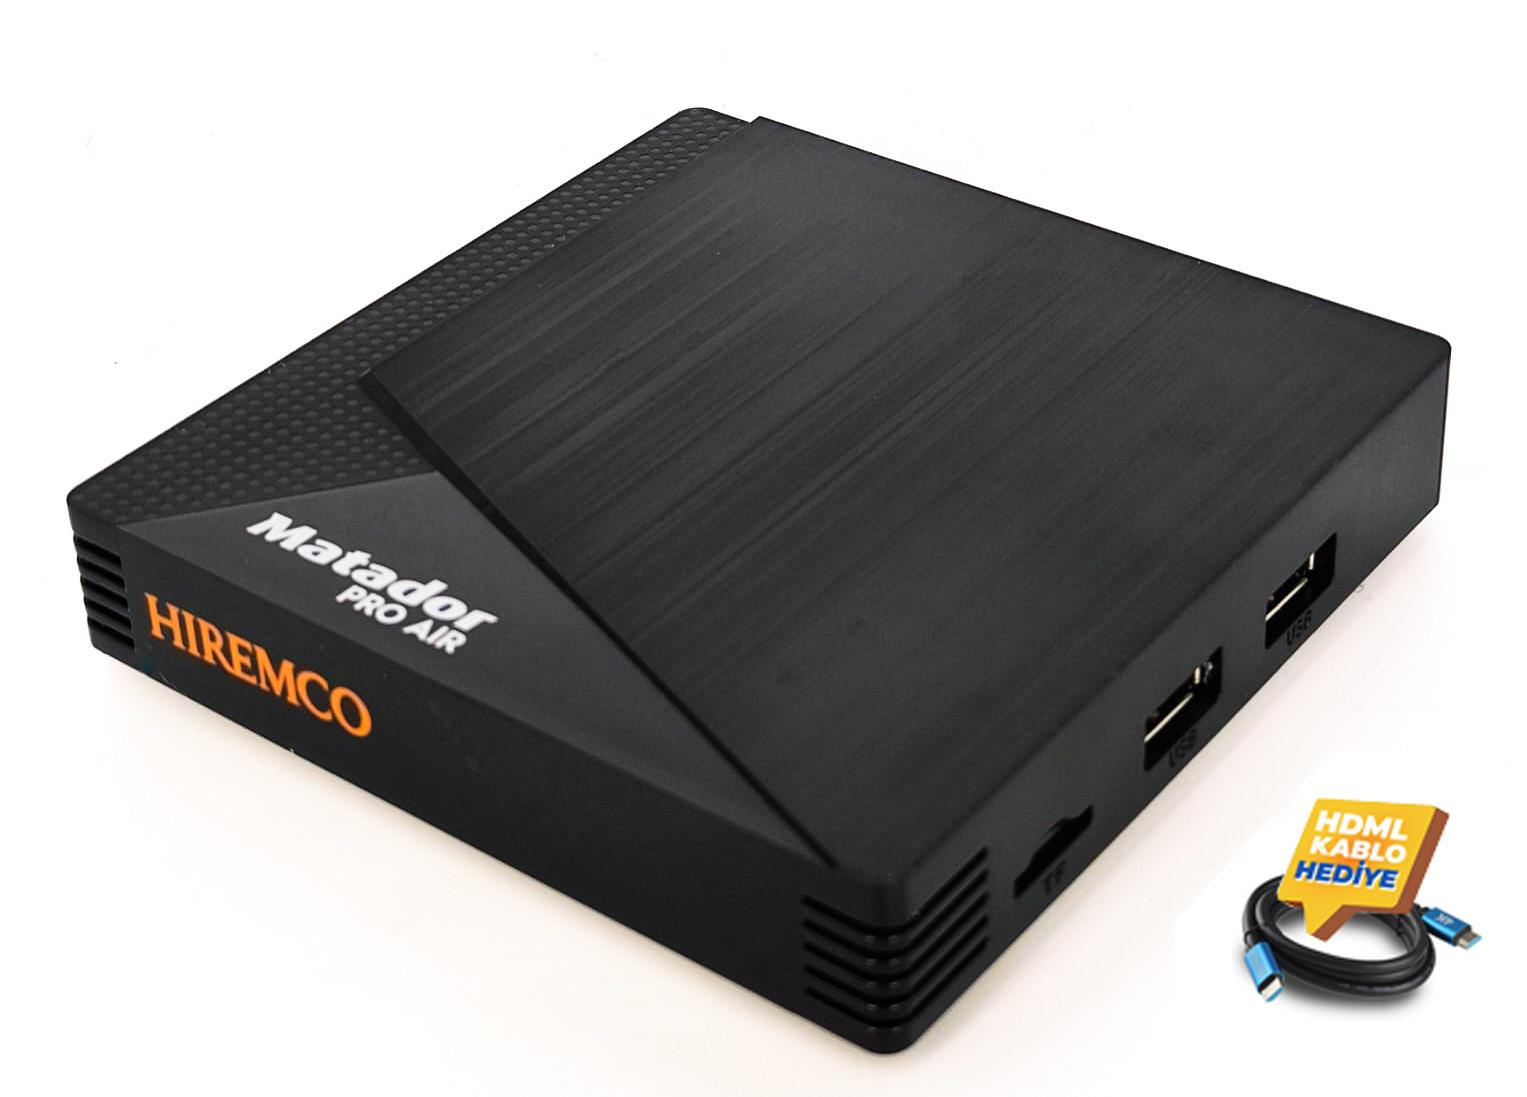 Hiremco Matador PRO AIR Android Box + HDMI Kablo Hediyeli